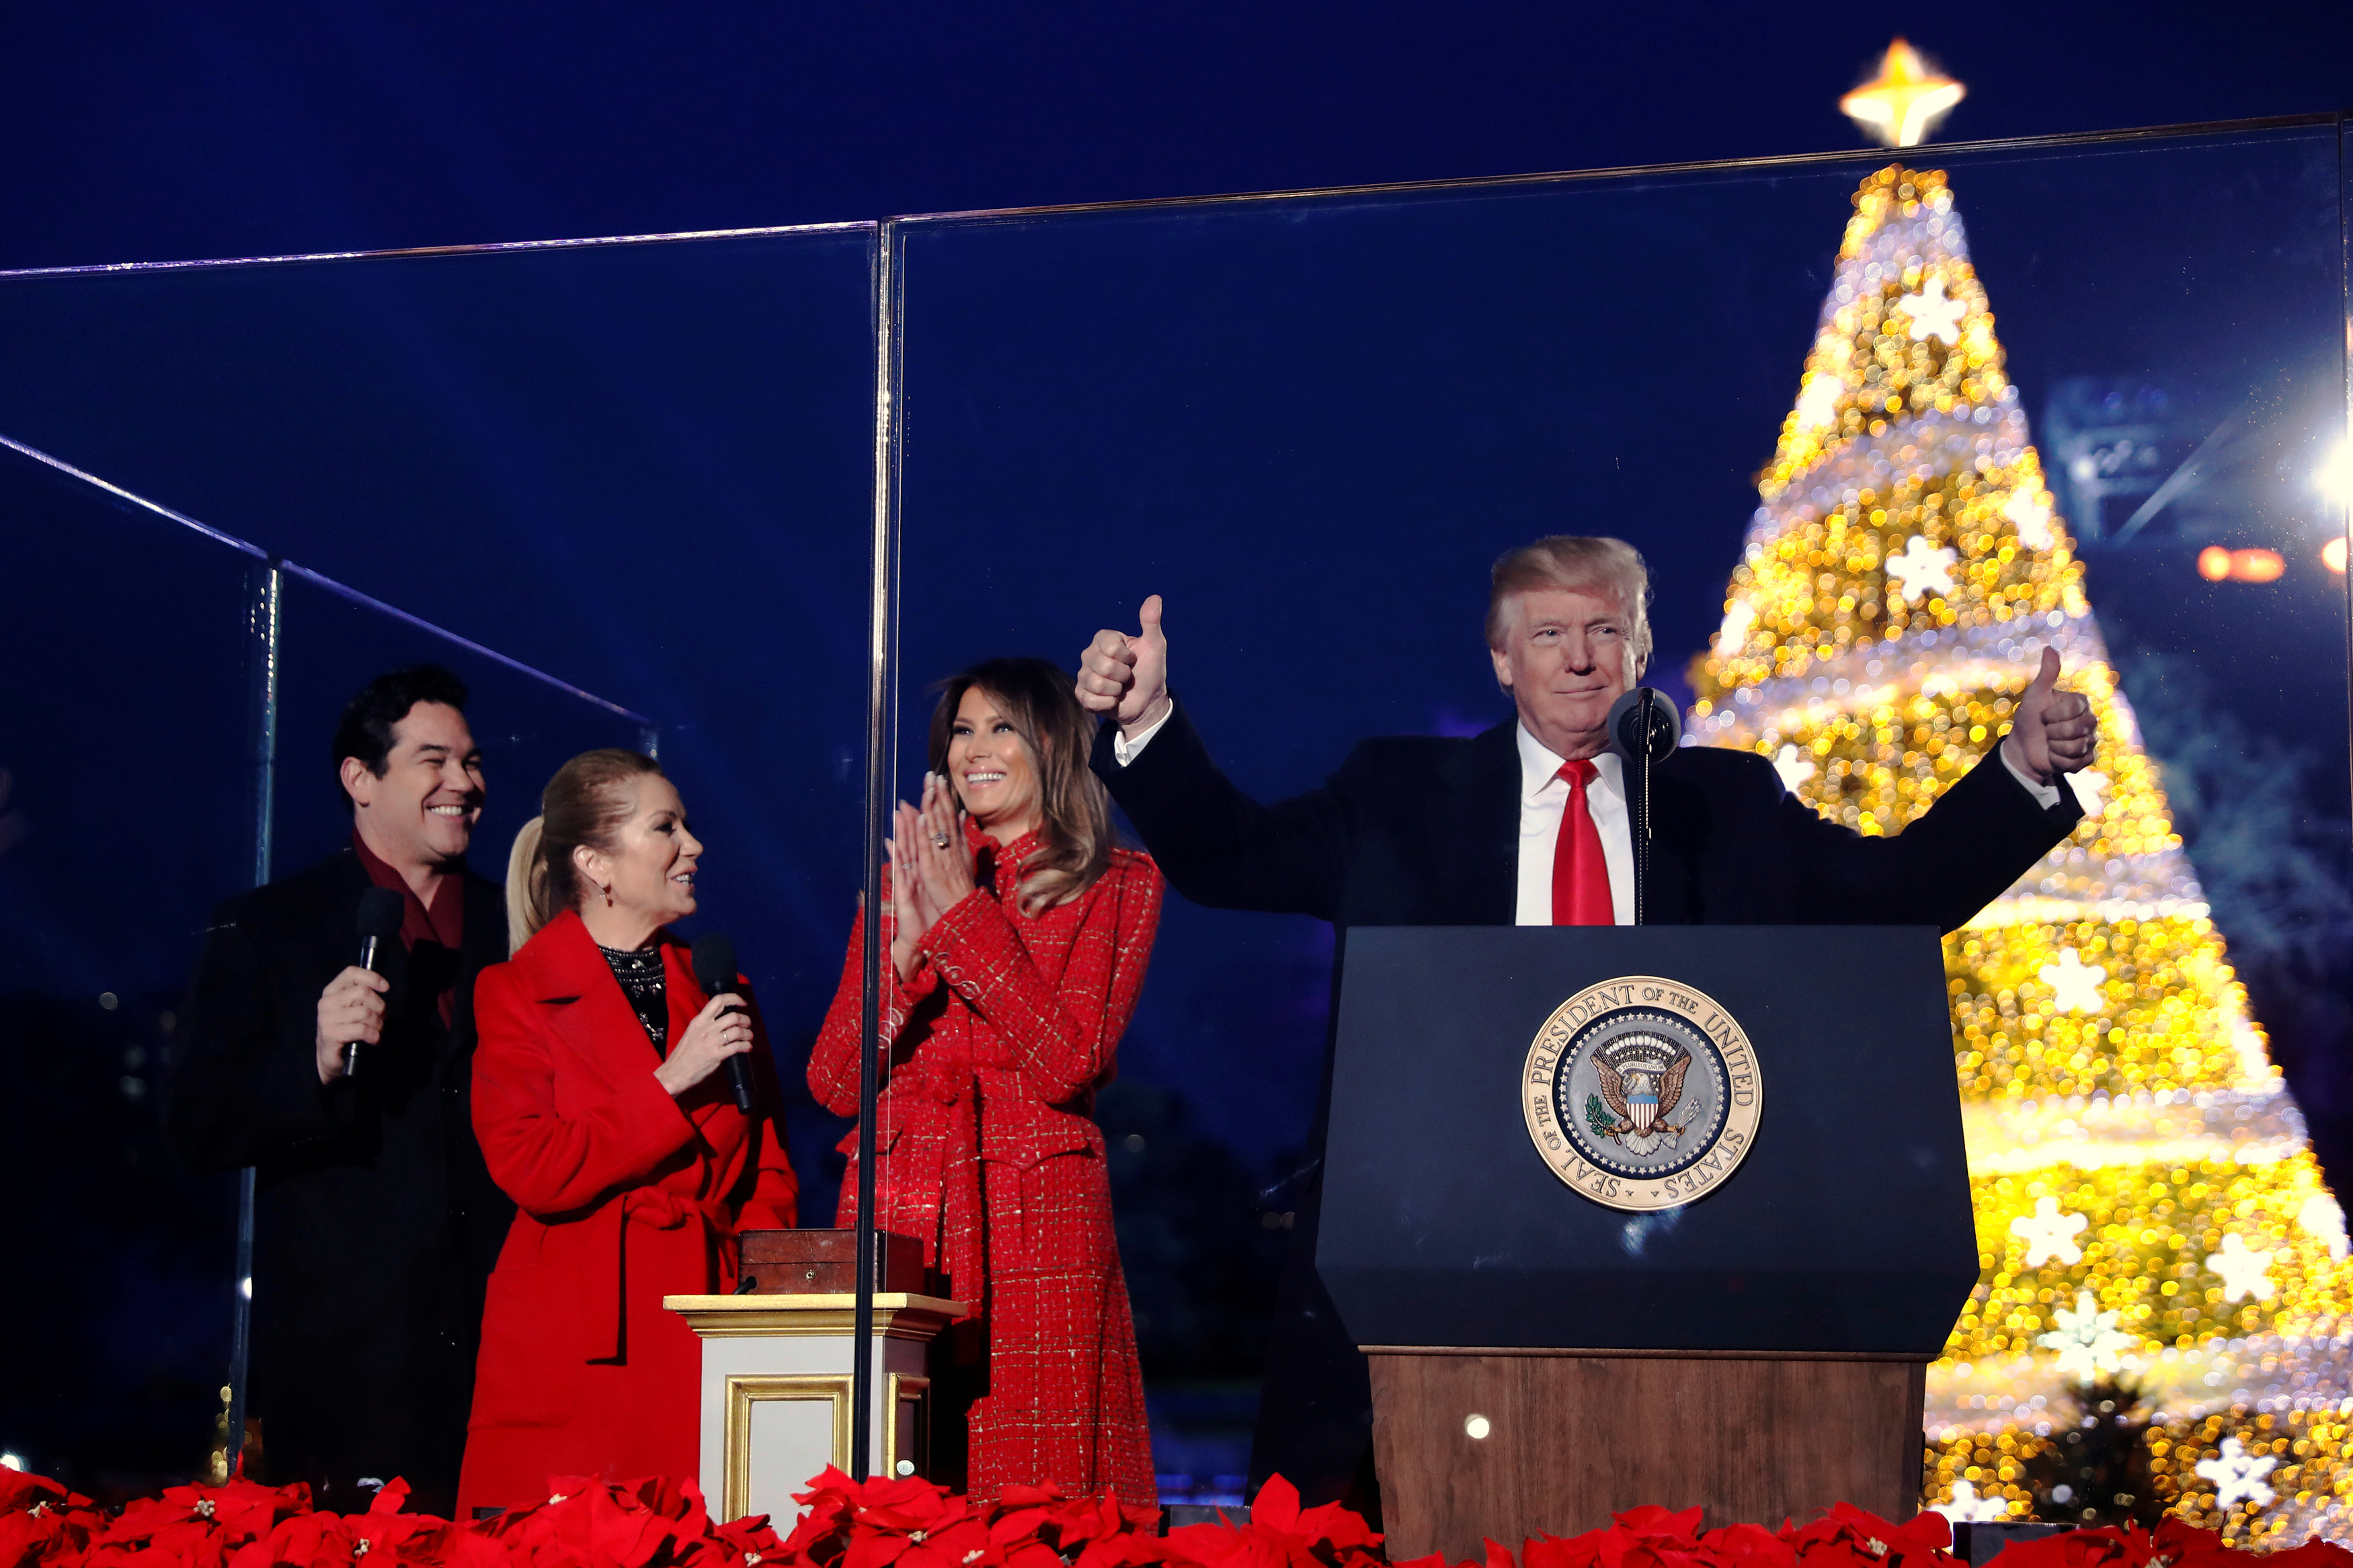 ترامب وزوجته يحتفلان بإضاءة شجرة عيد الميلاد